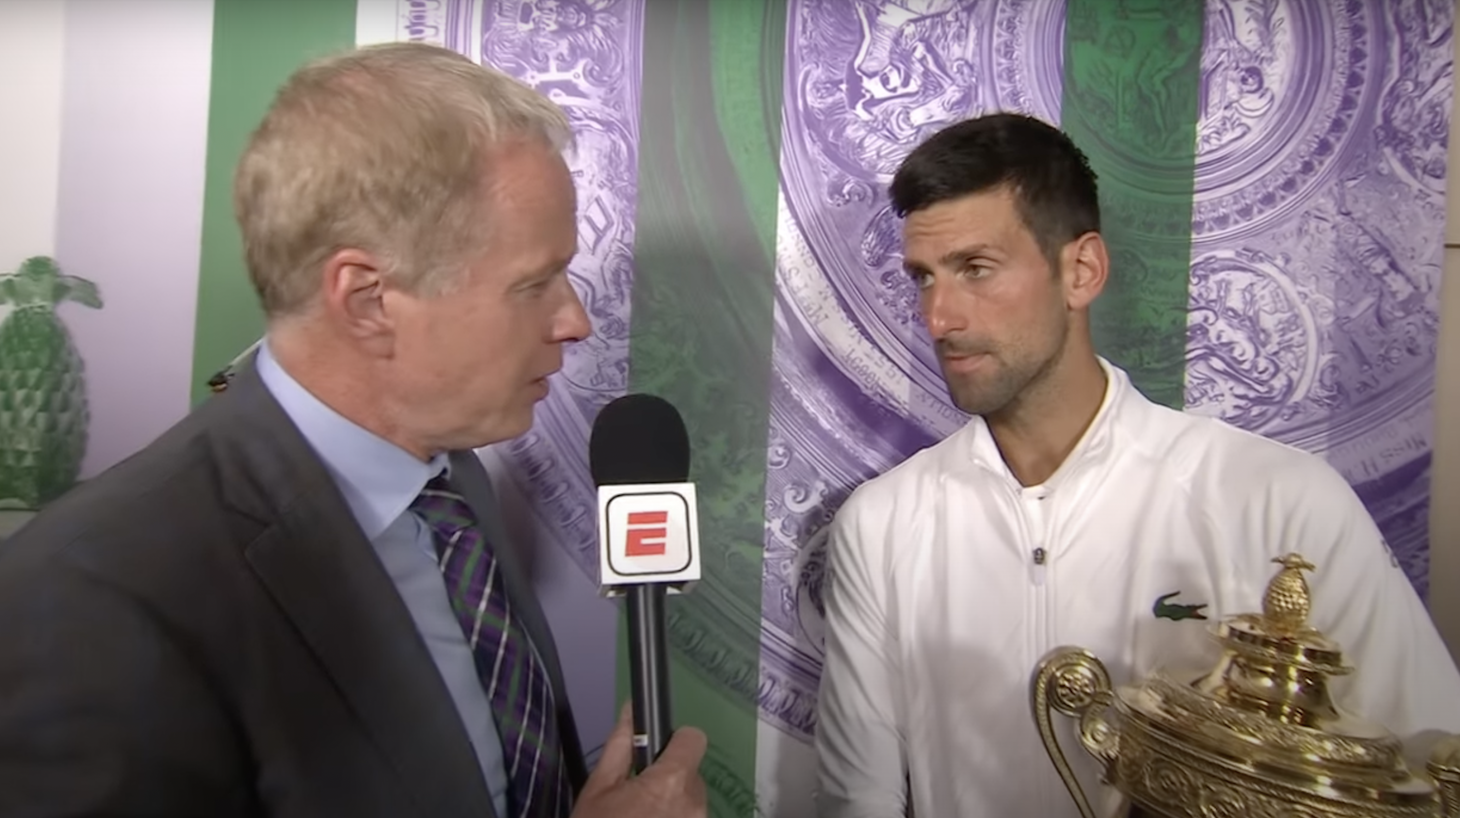 Novak Djokovic gives a post-match interview after winning Wimbledon.